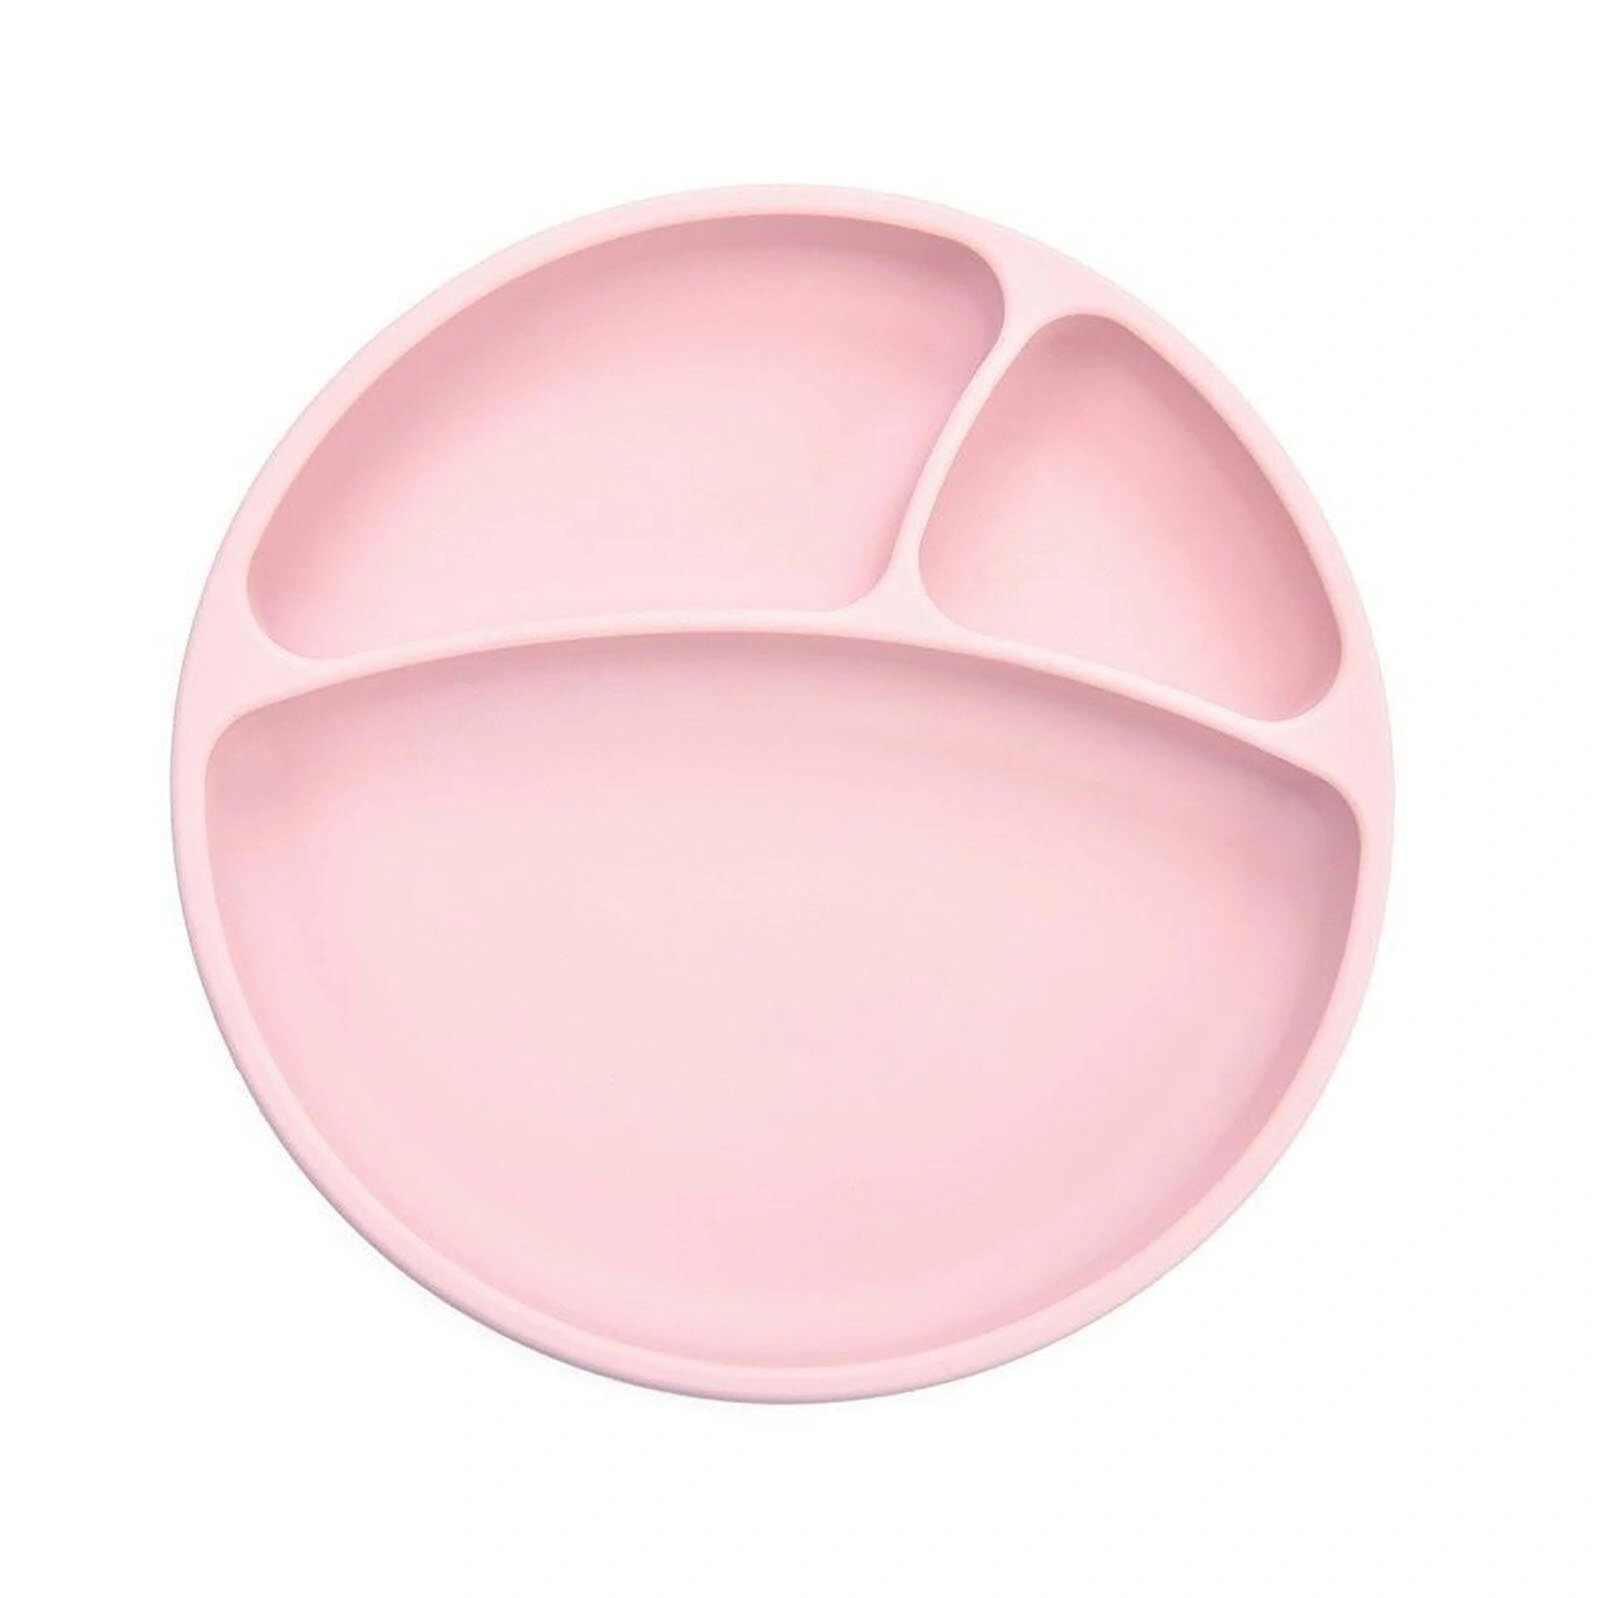 Porsiyon Vakumlu Mama Tabağı Pinky Pink